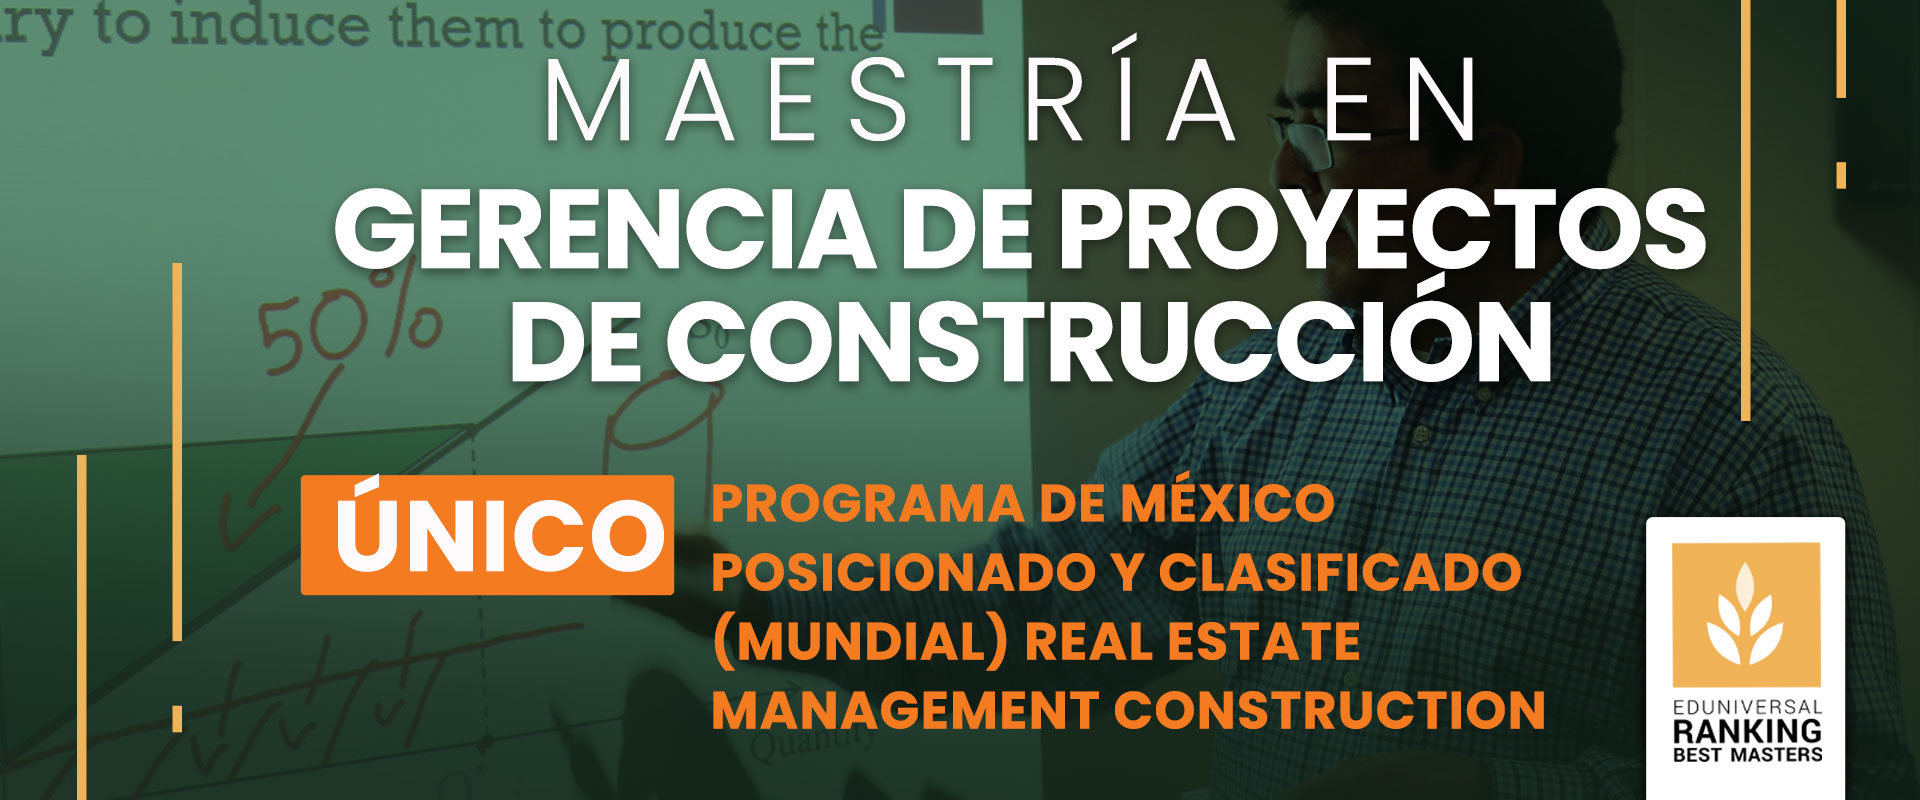 Maestría en Gerencia de Proyectos de Construcción - Universidad de las Américas Puebla (UDLAP)